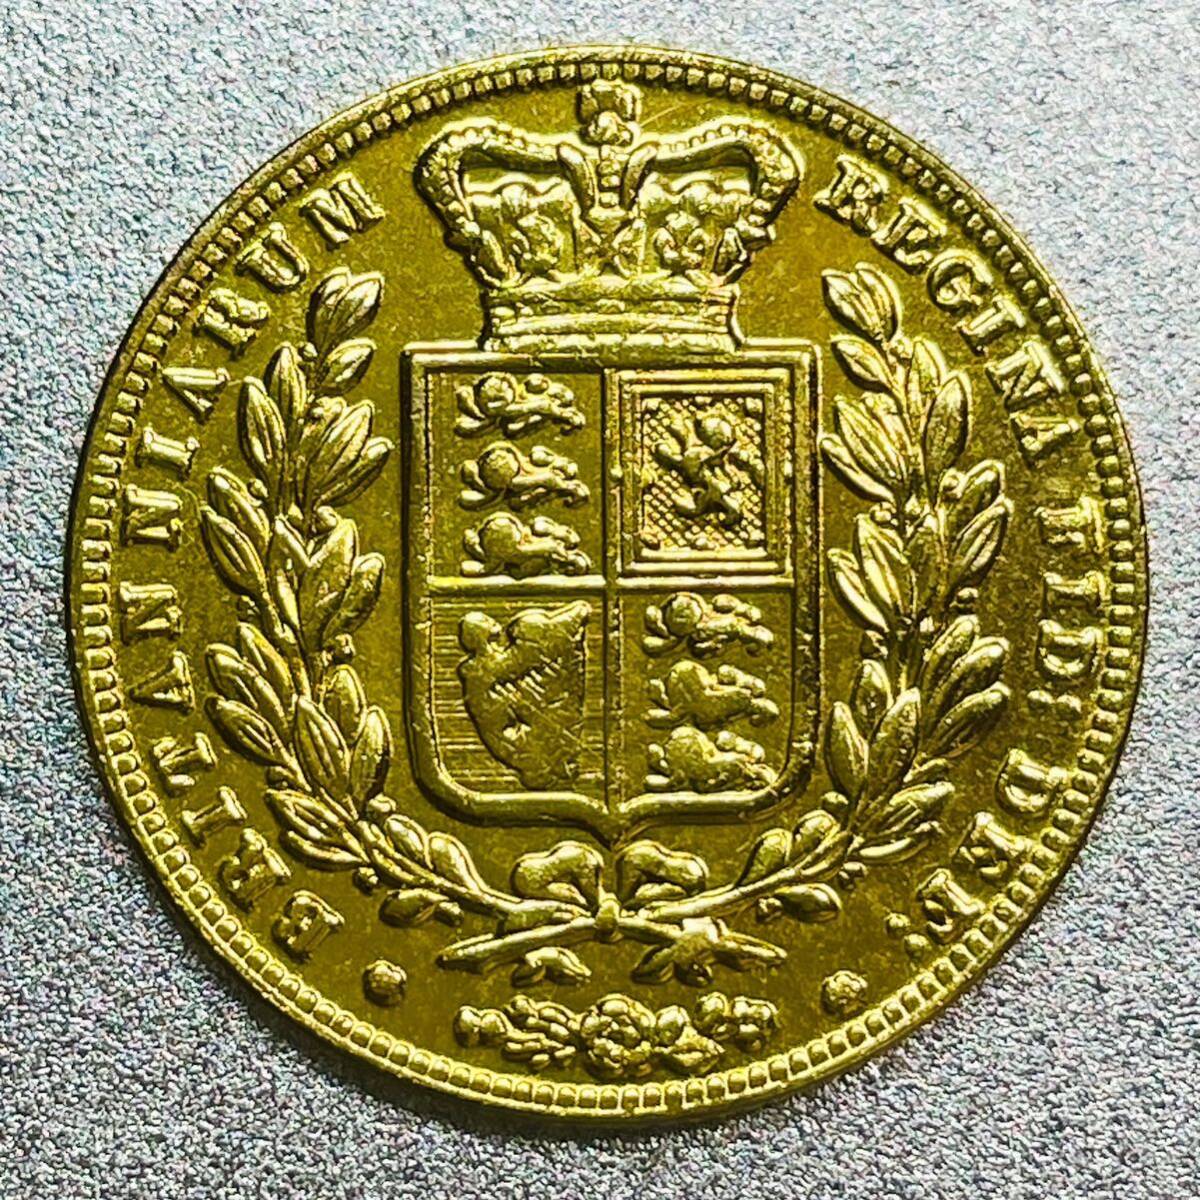 ソブリン金貨 ヴィクトリア女王 レプリカコインの画像2